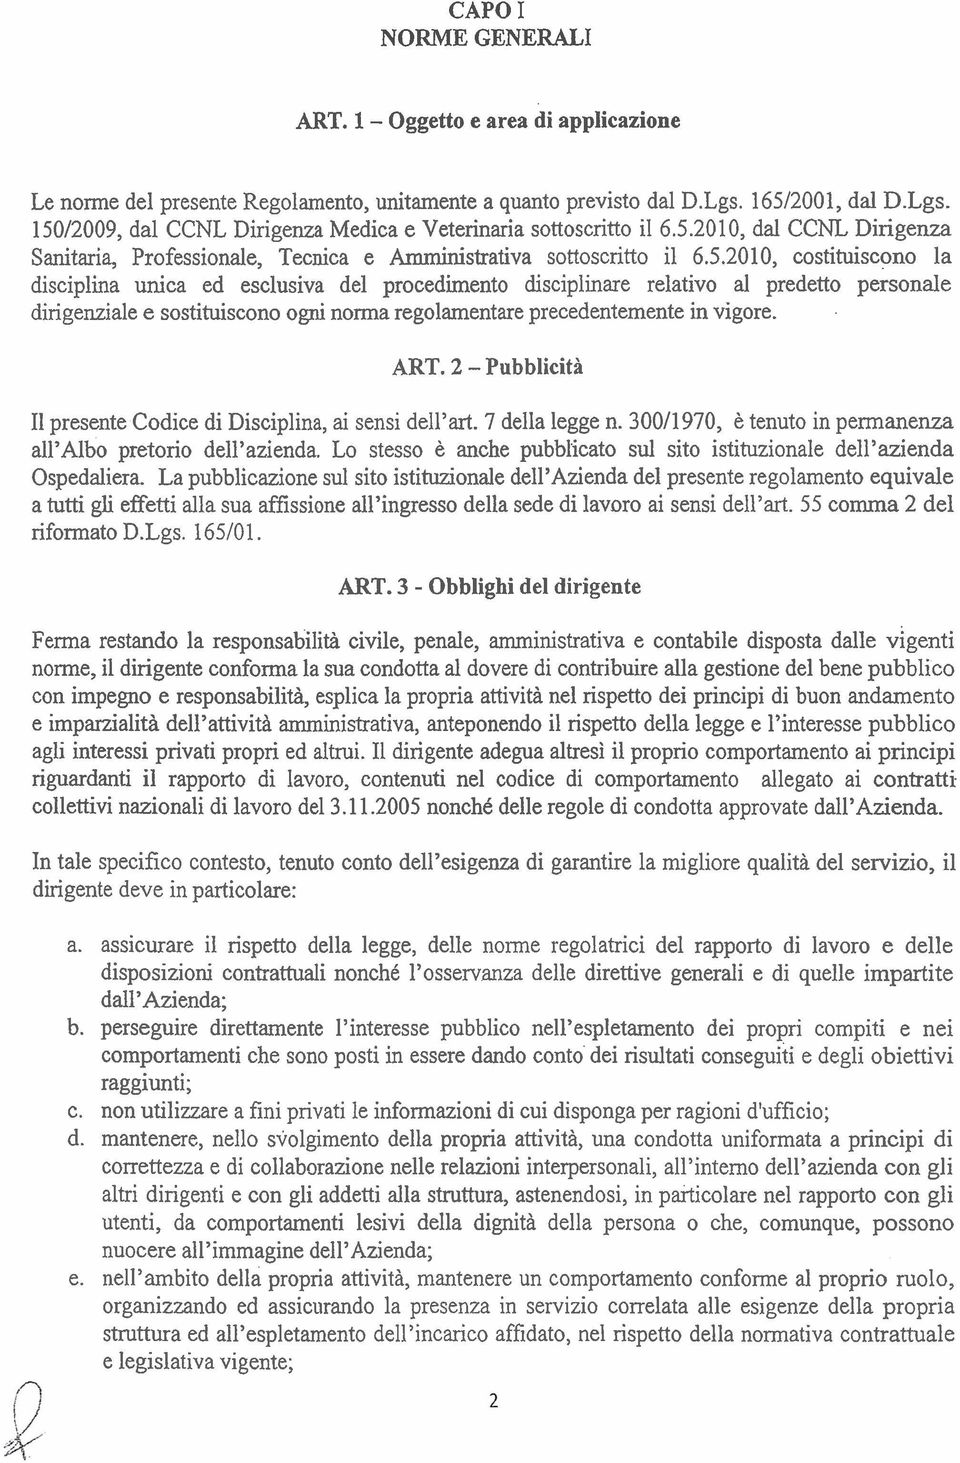 ART. 2 - Pubblicità I1 presente Codice di Disciplina, ai sensi dell'art. 7 della legge n. 300/1970, è tenuto in permanenza all'albo pretori0 dell'azienda.